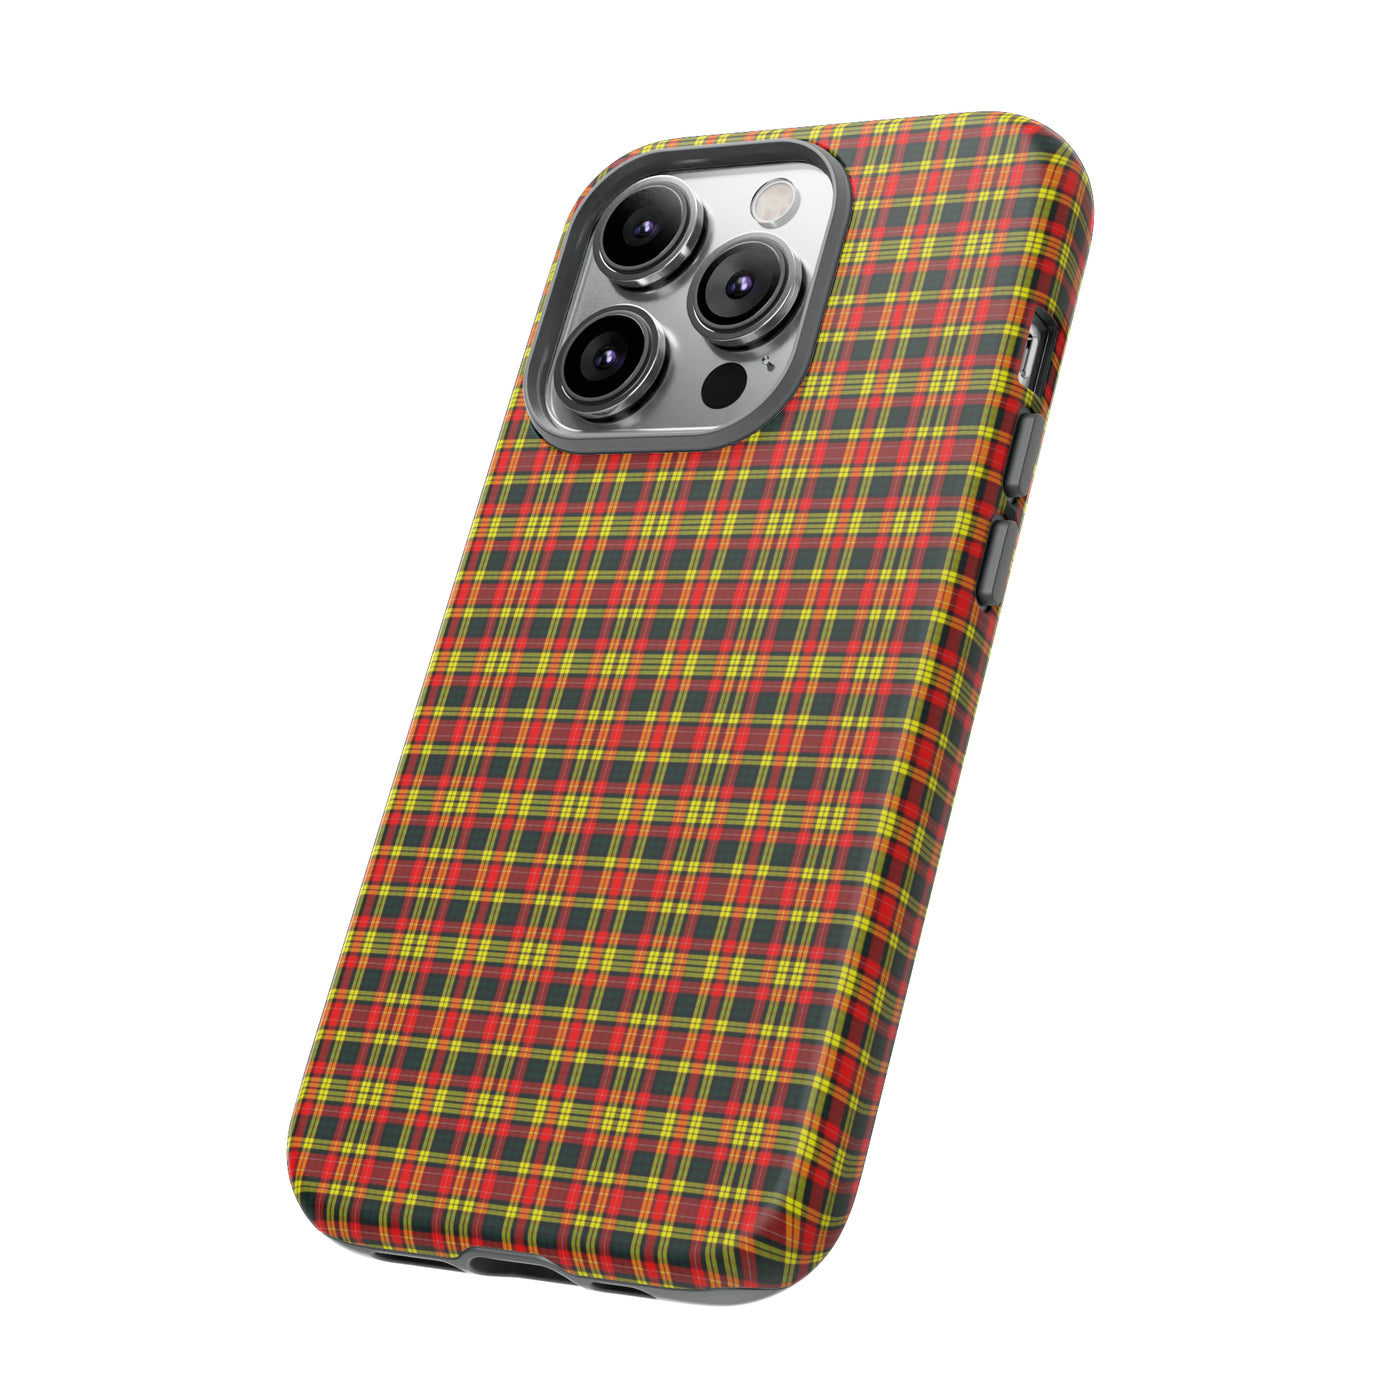 Cute IPhone Case | iPhone 15 Case | iPhone 15 Pro Max Case, Iphone 14 Case, Iphone 14 Pro Max Case IPhone Case for Scots, Buchannan Tartan